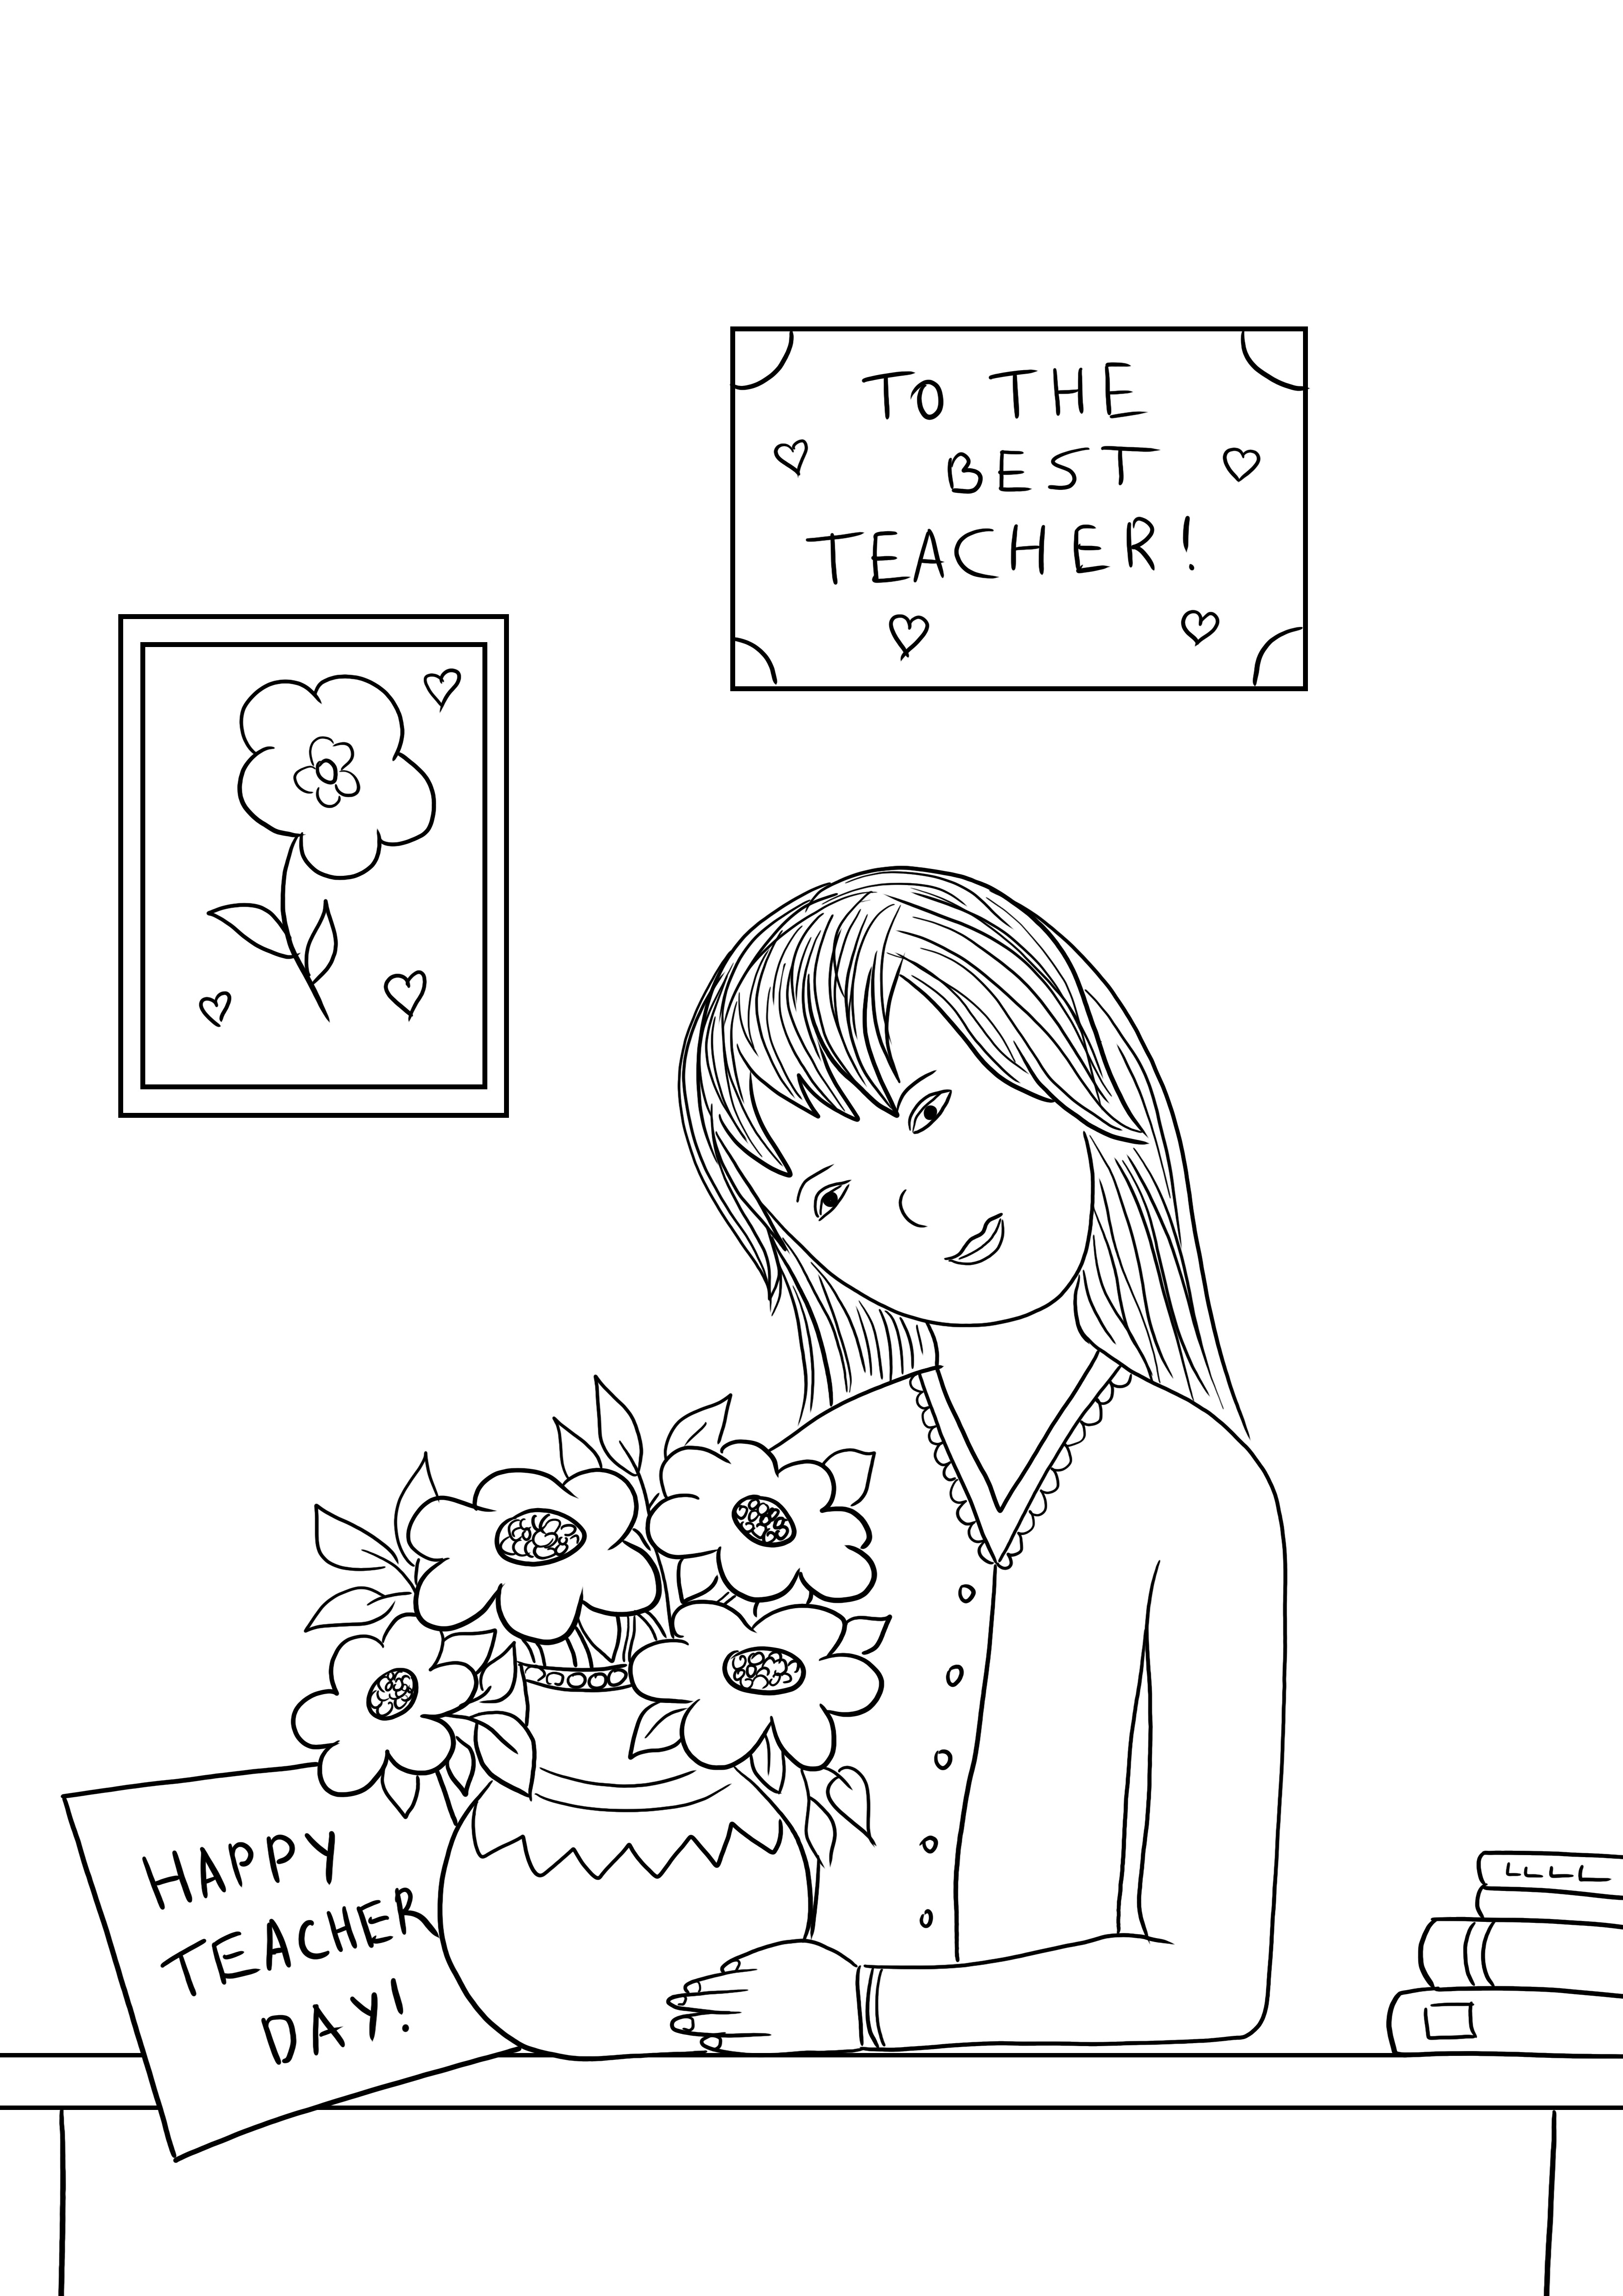 Unsere Malvorlage der Happy Teacher's Day-Karte steht zum kostenlosen Download bereit